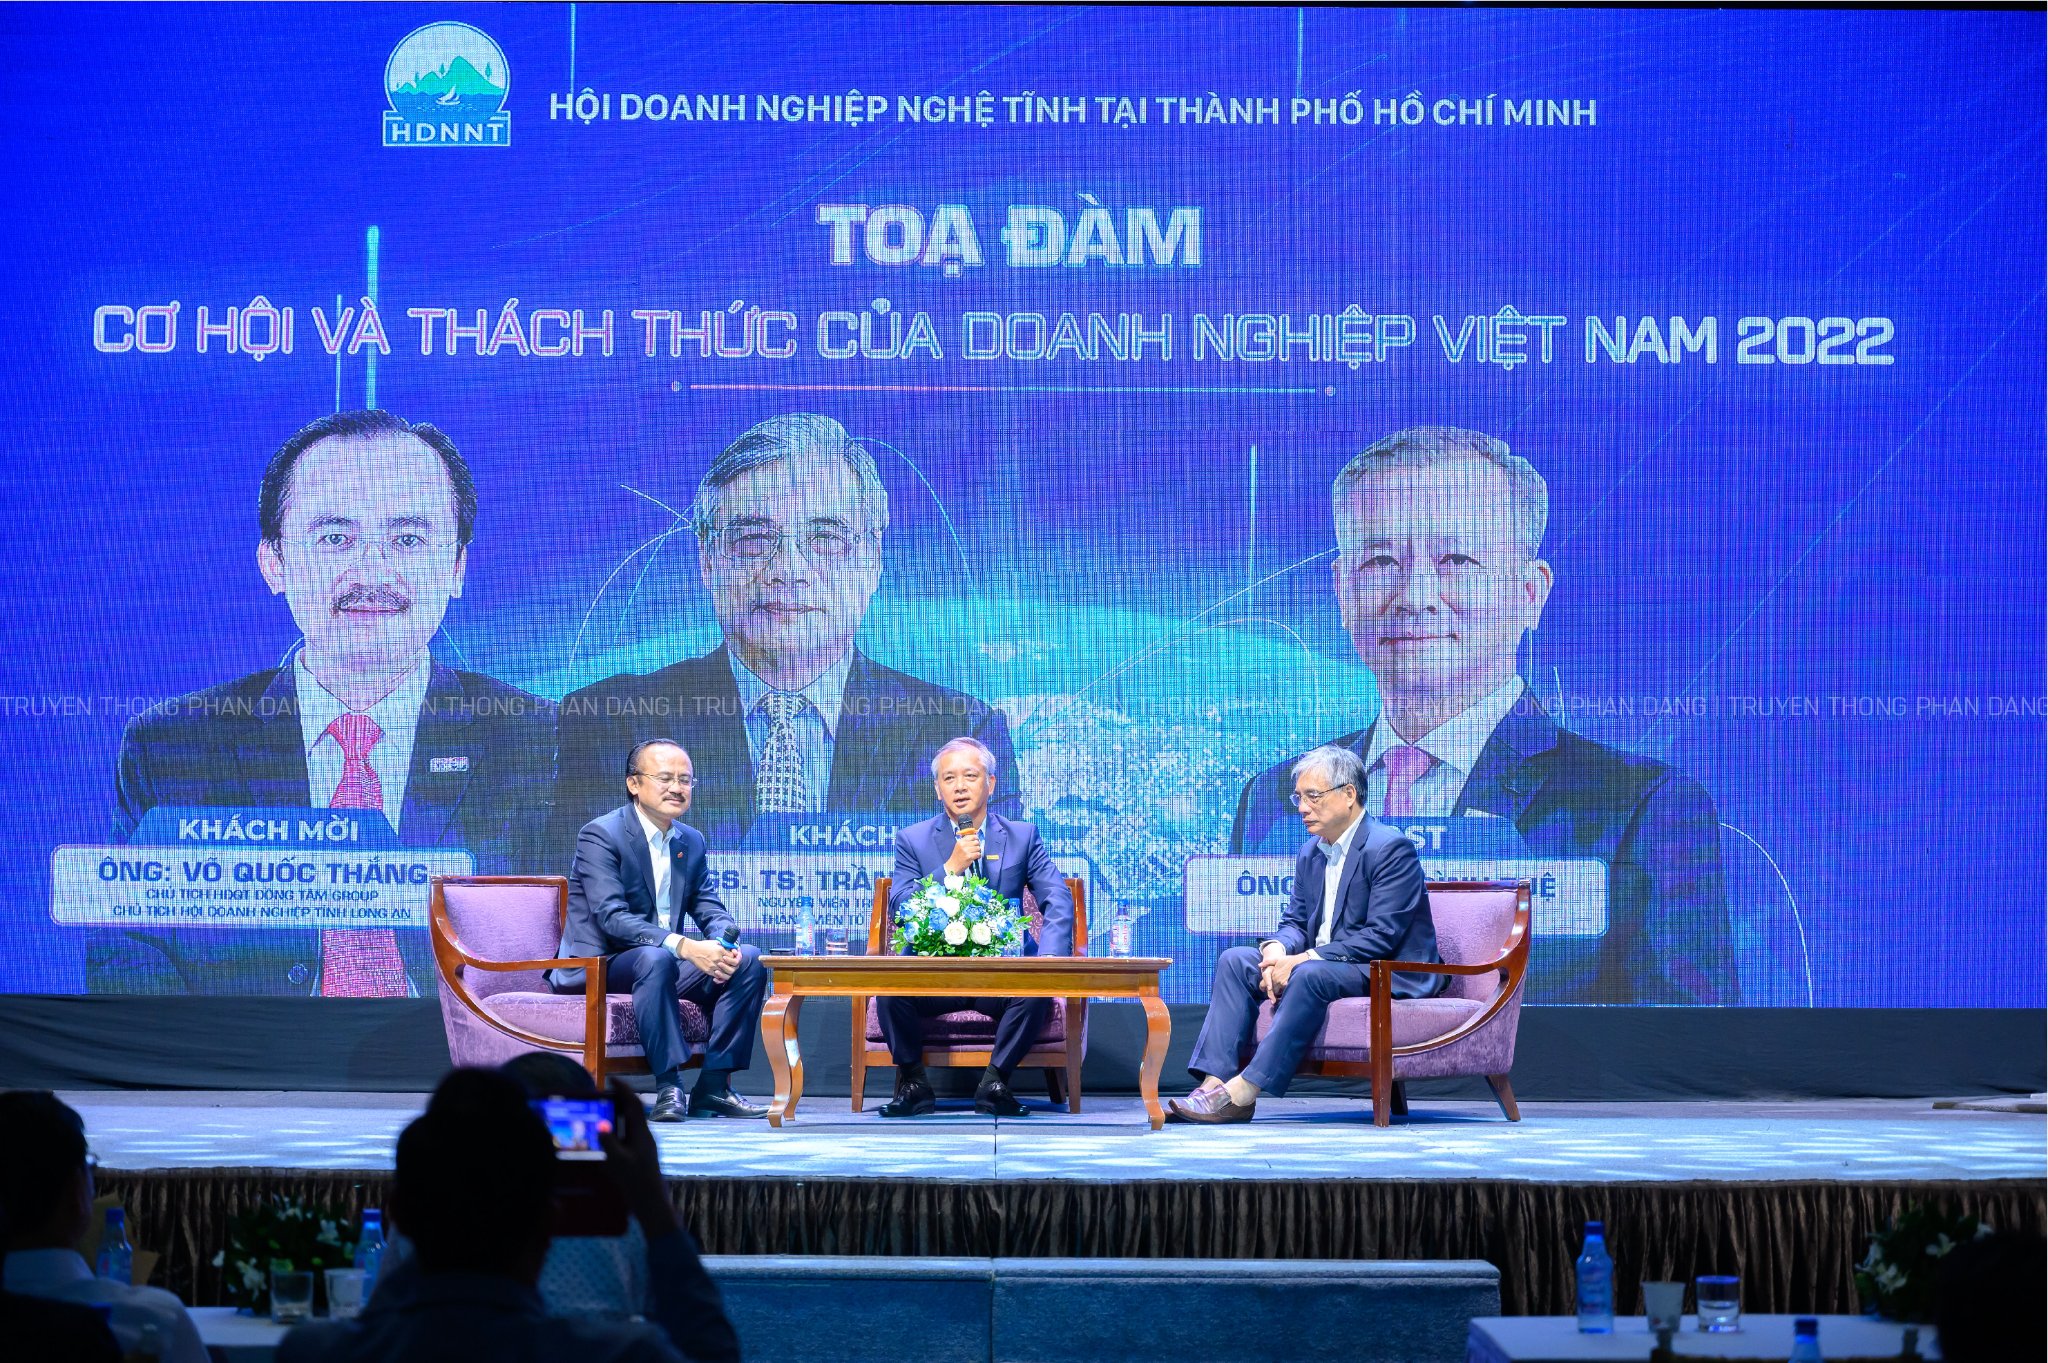 Buổi tọa đàm cơ hội và thách thức của doanh nghiệp Việt Nam 2022